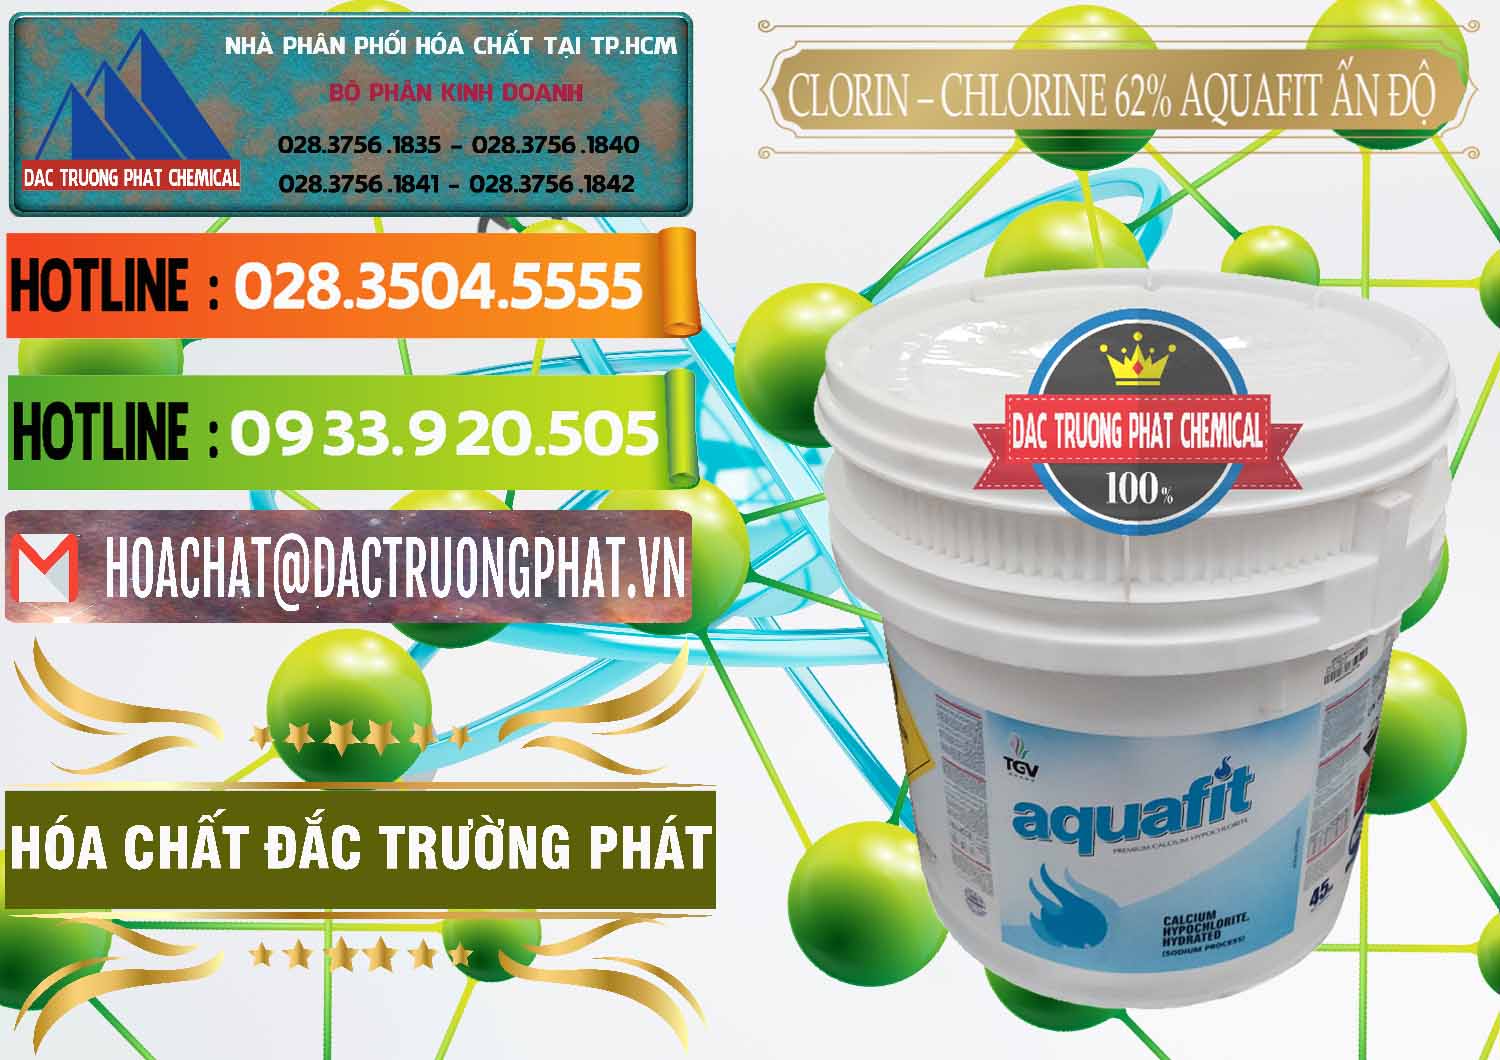 Phân phối ( bán ) Clorin - Chlorine 62% Aquafit Thùng Lùn Ấn Độ India - 0057 - Nơi chuyên bán - cung cấp hóa chất tại TP.HCM - cungcaphoachat.com.vn